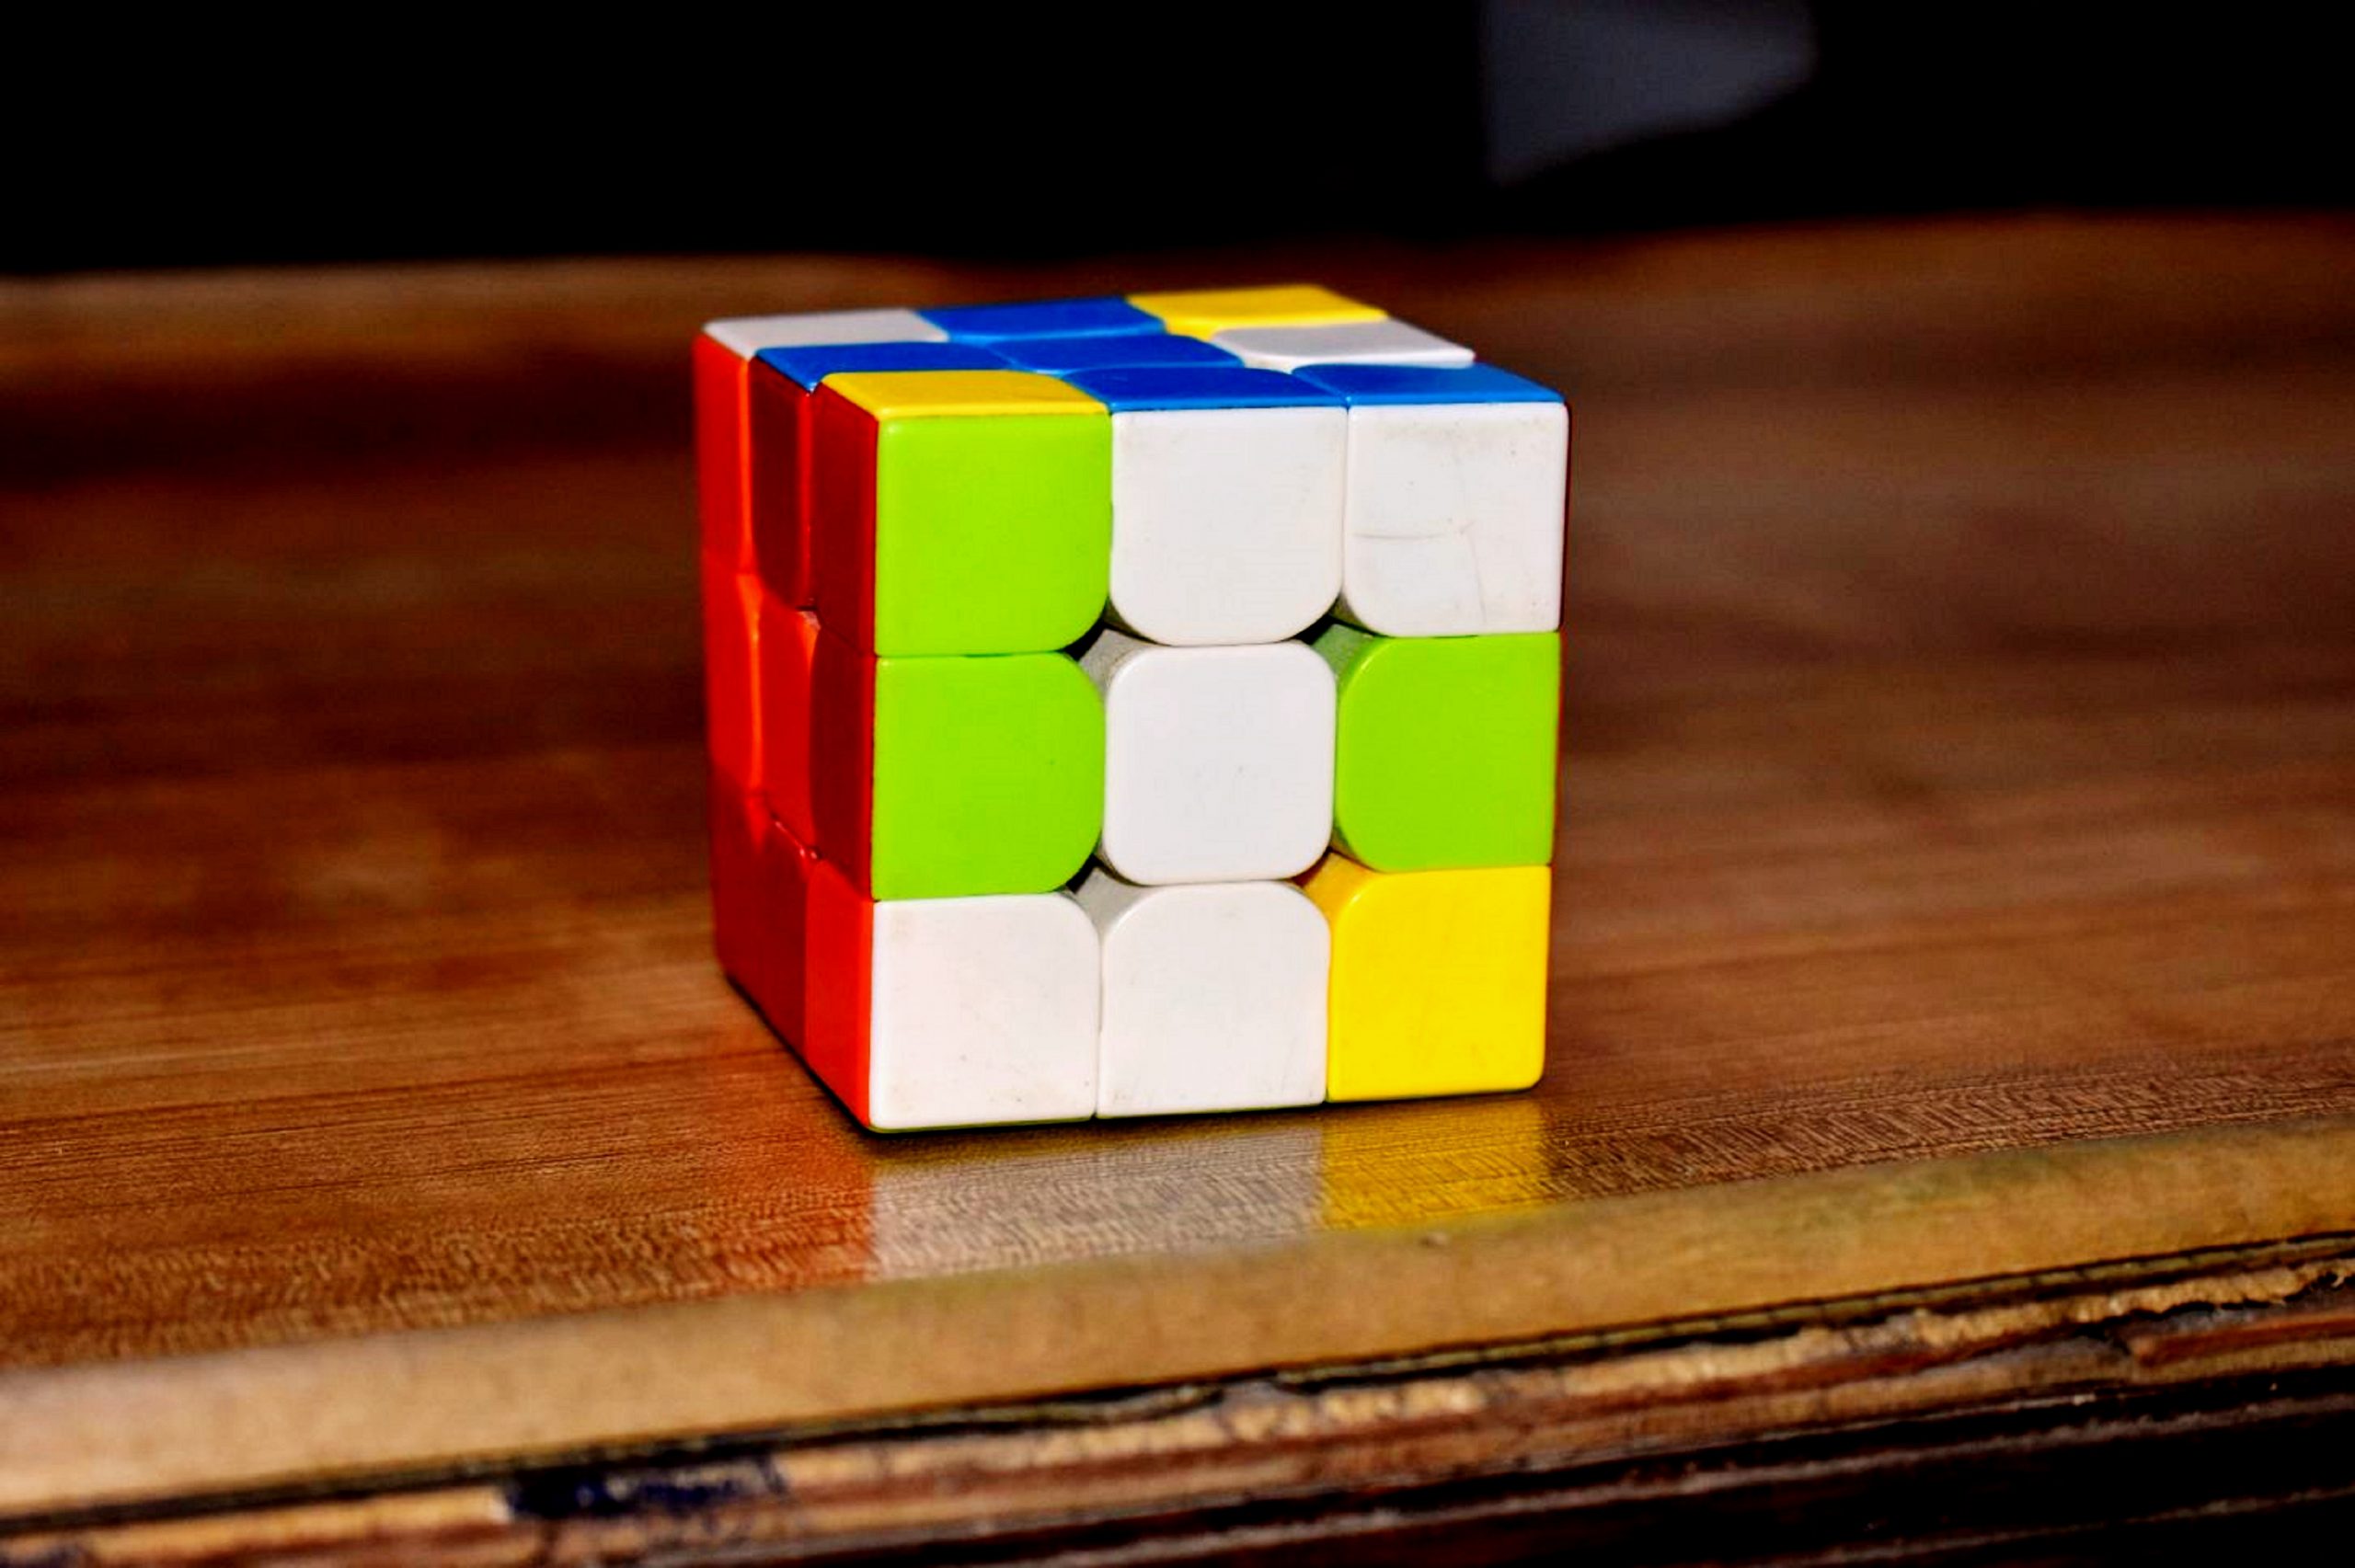 A Rubik's Cube